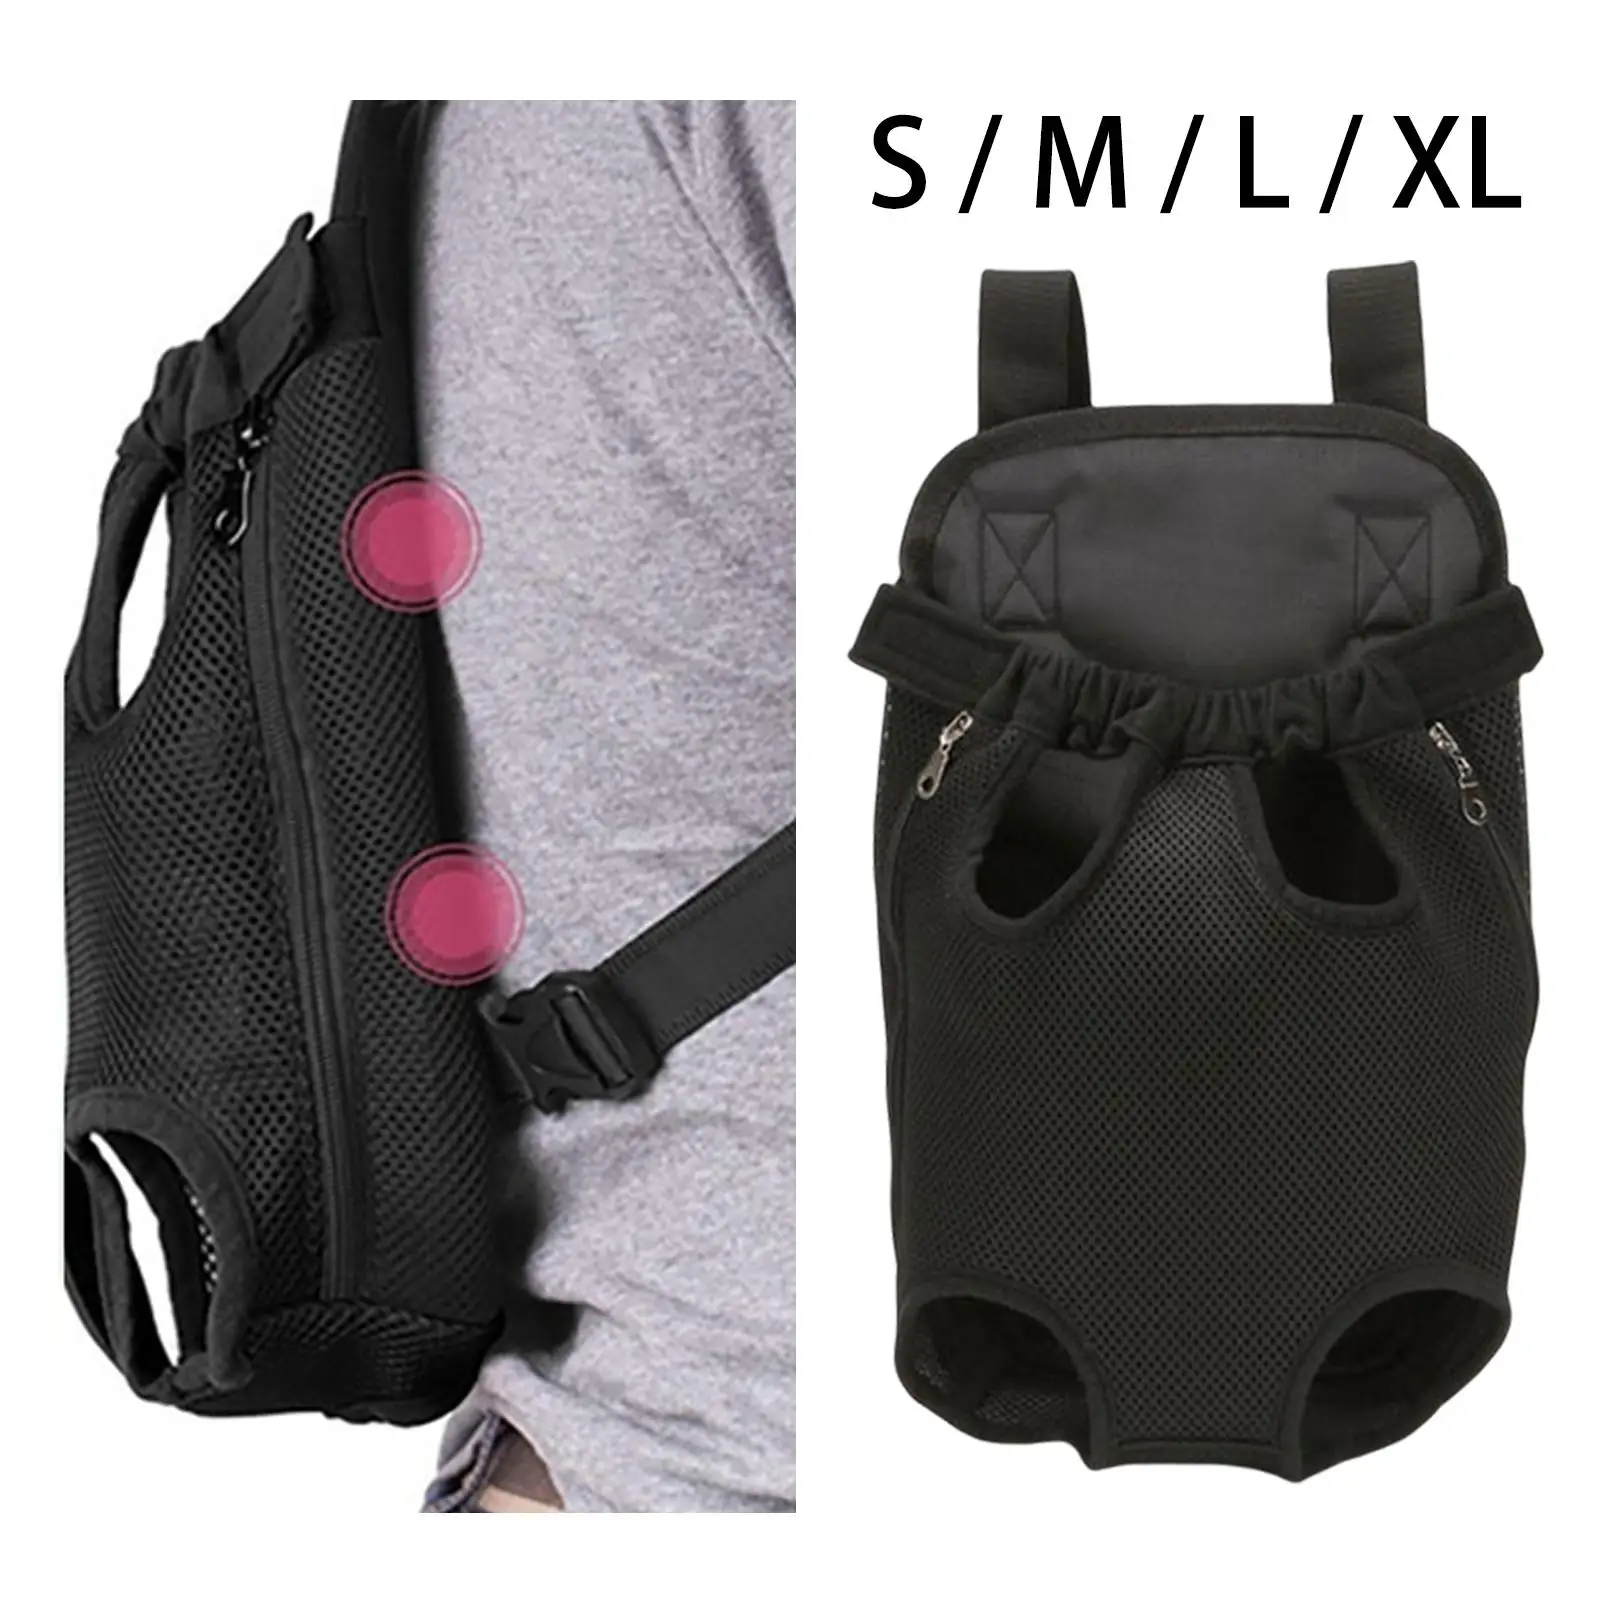 Dog Carrier Backpack Cat Chest Bag Shoulder Strap Adjustable Front Carrier Hands Free Portable Puppy Carrier for Traveling